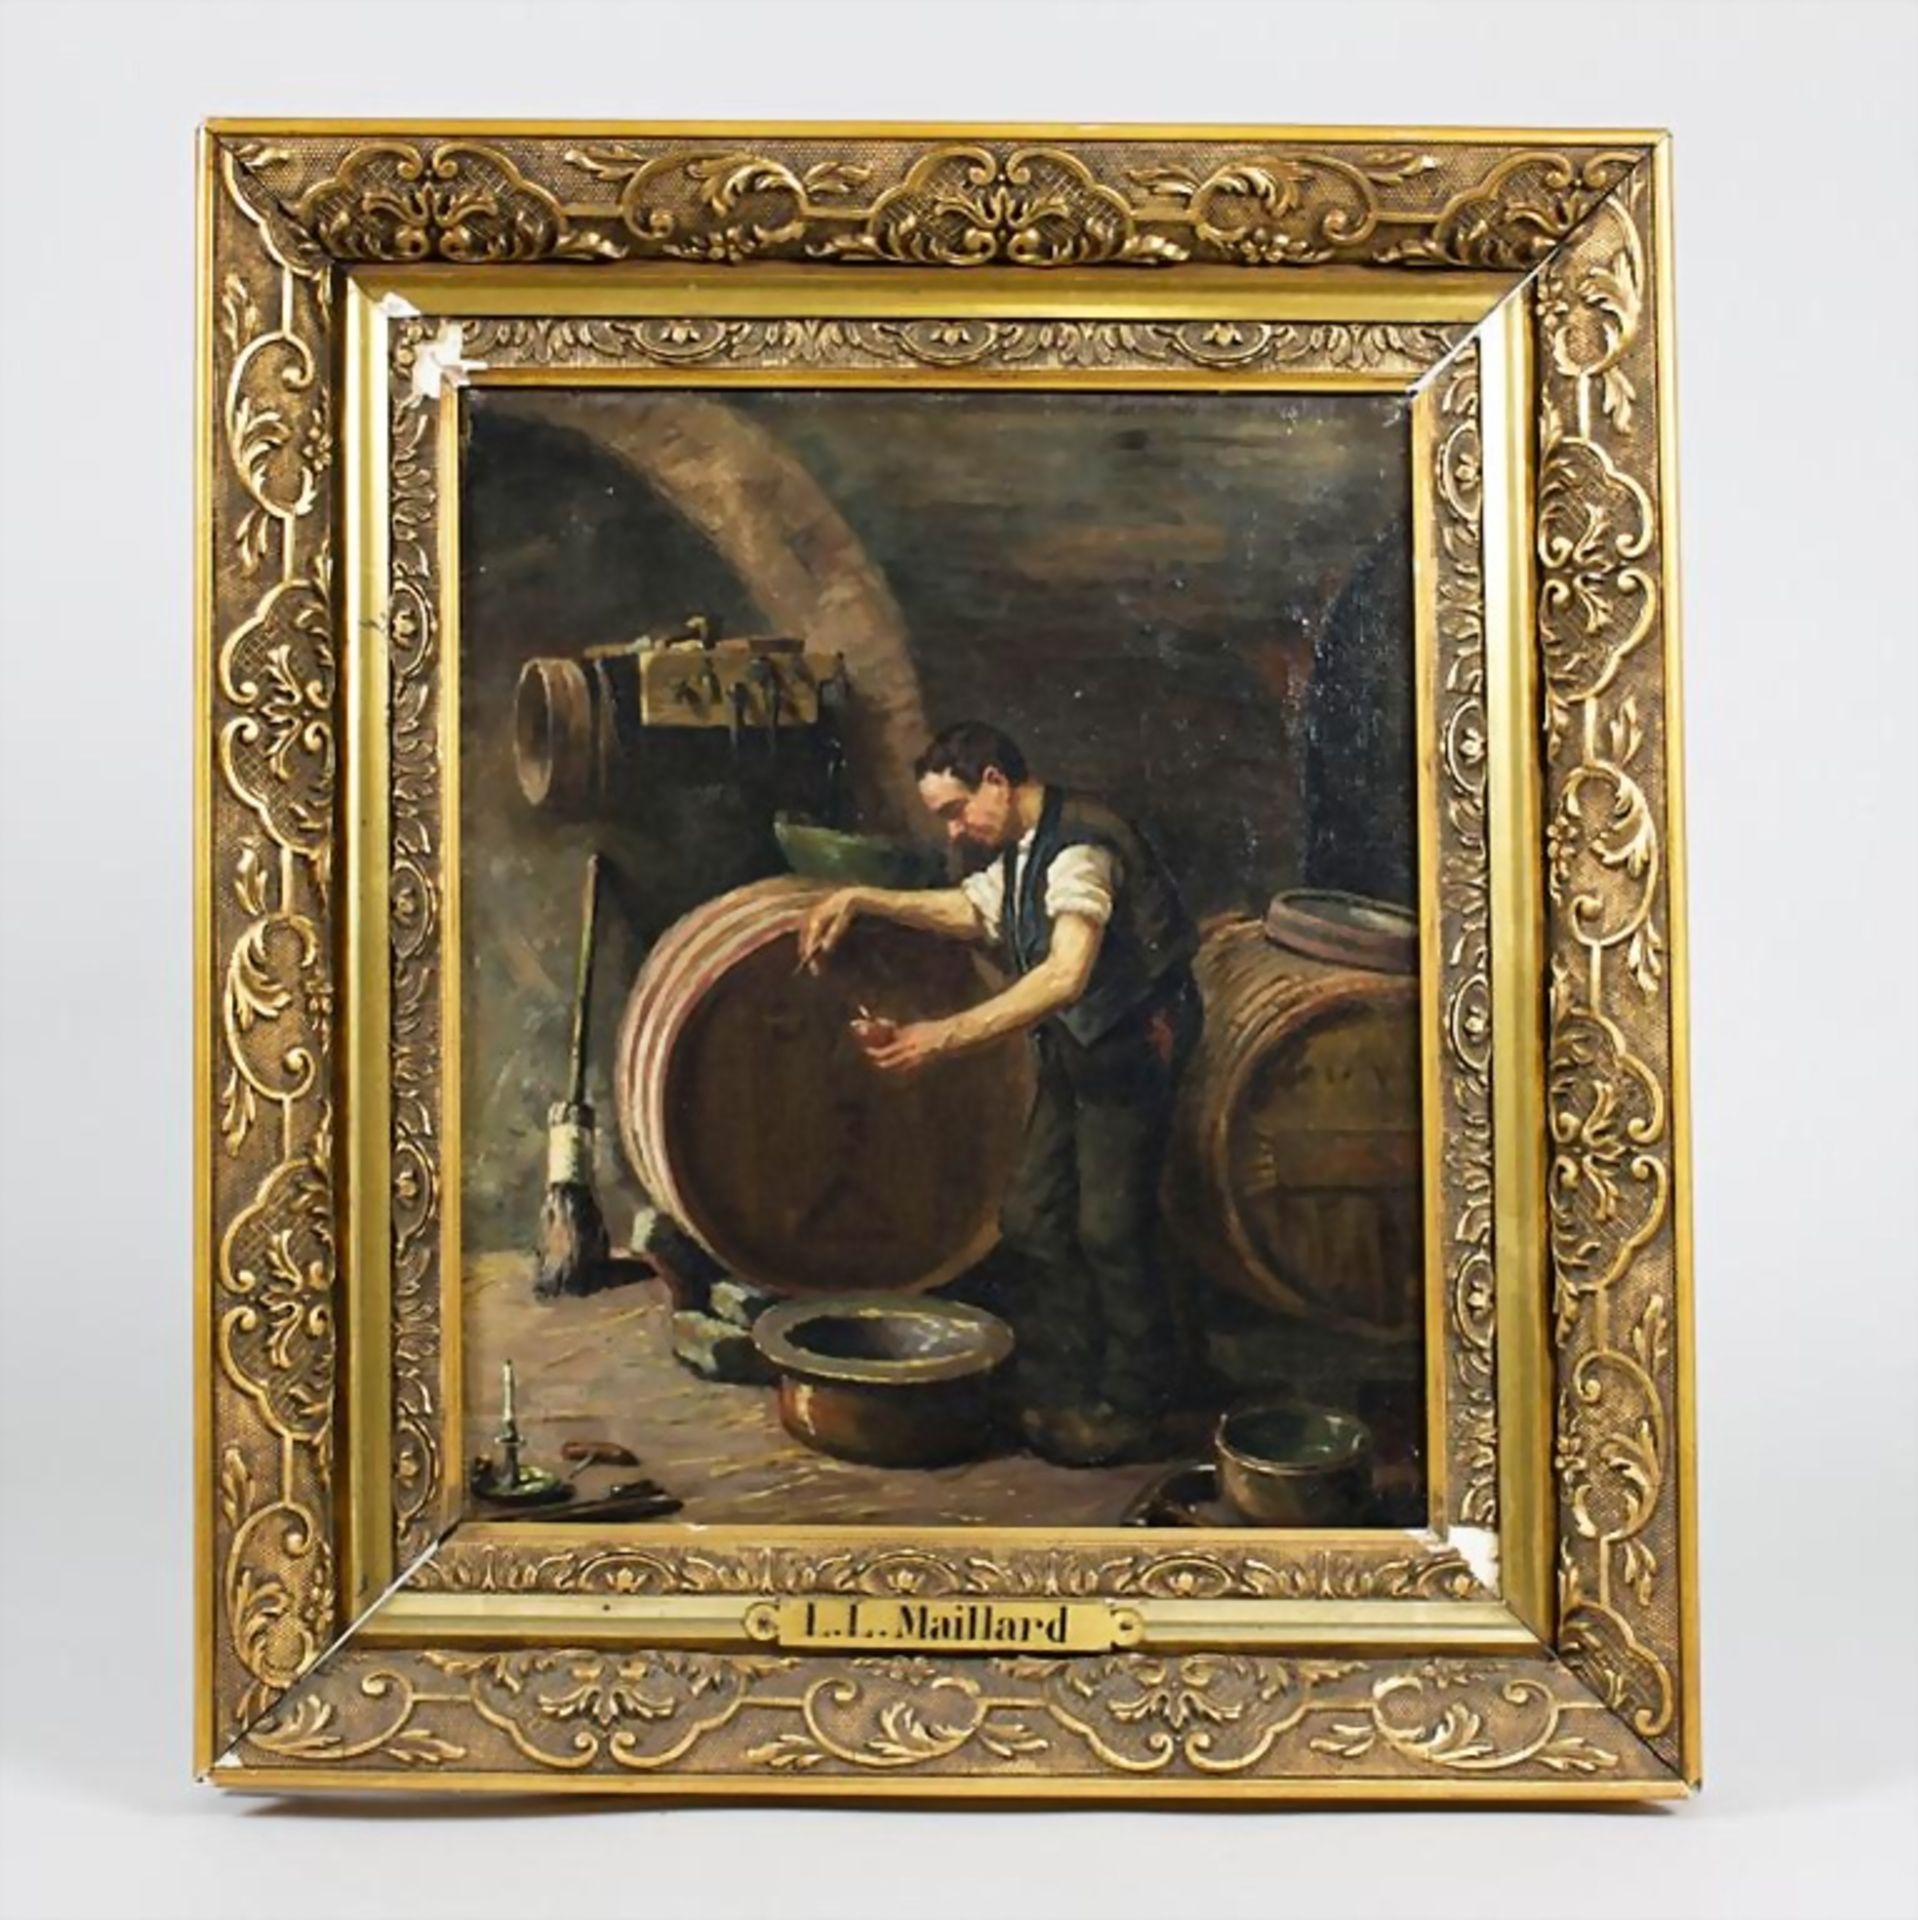 Winzer im Weinkeller/Wine Grower In The Wine Cellar, L. L. Maillard, Frankreich, 19. Jh. - Image 2 of 3